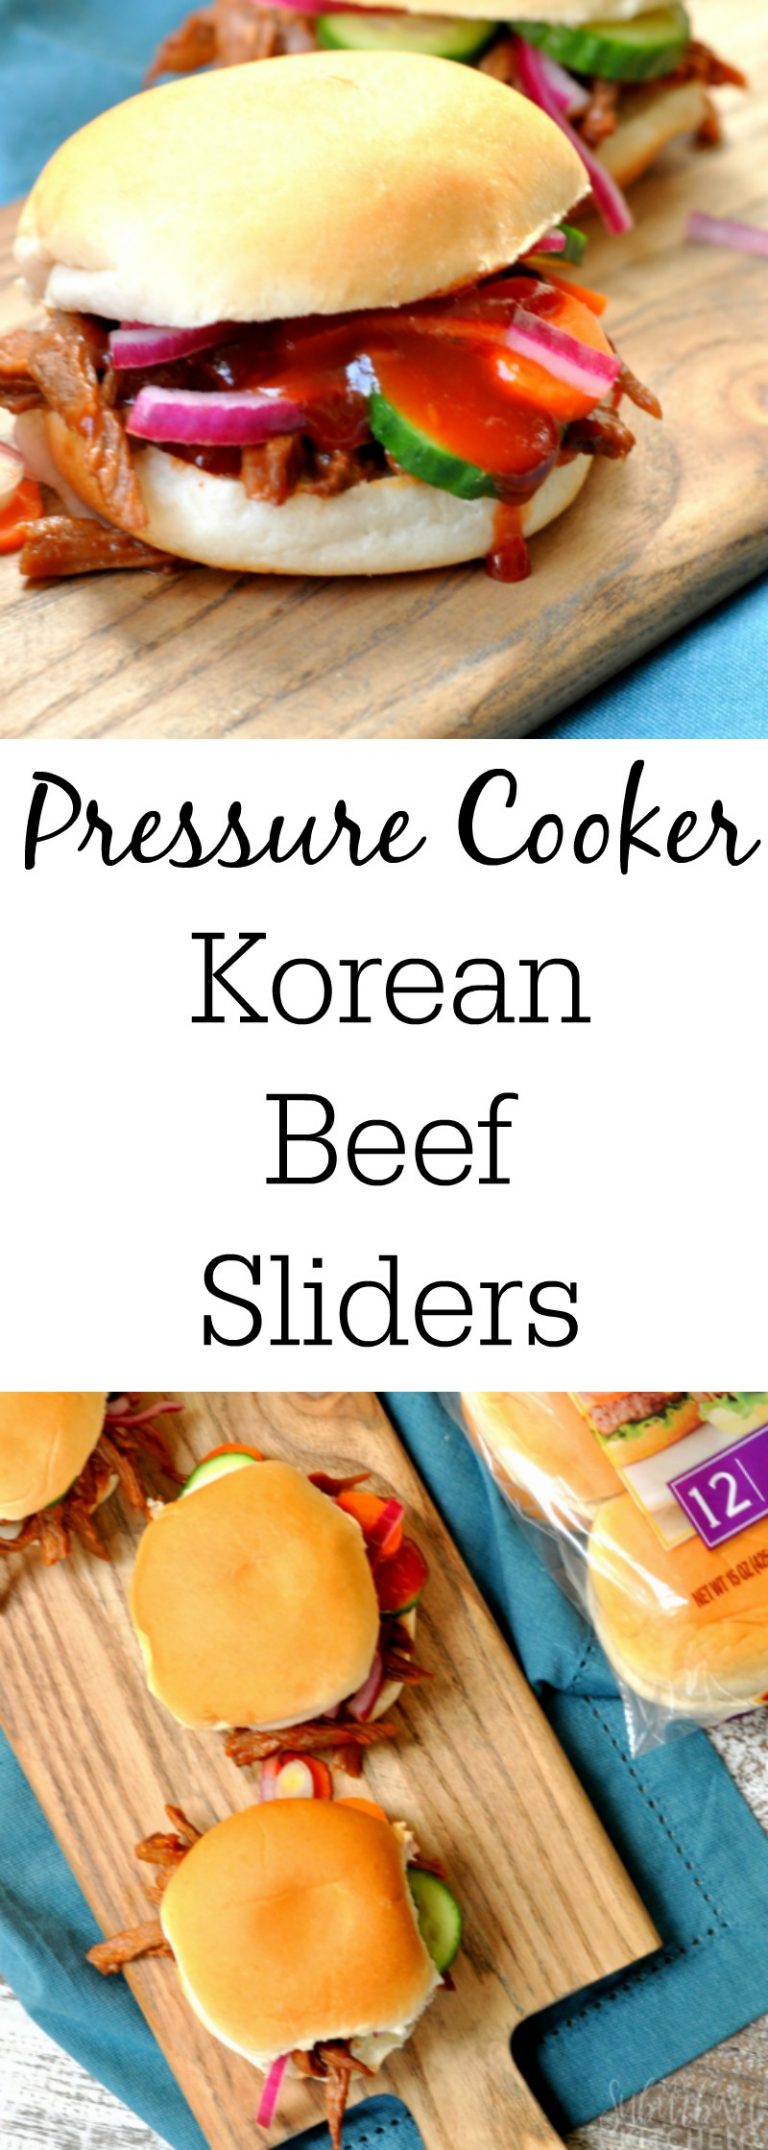 Pressure Cooker Korean Beef Sliders - My Suburban Kitchen